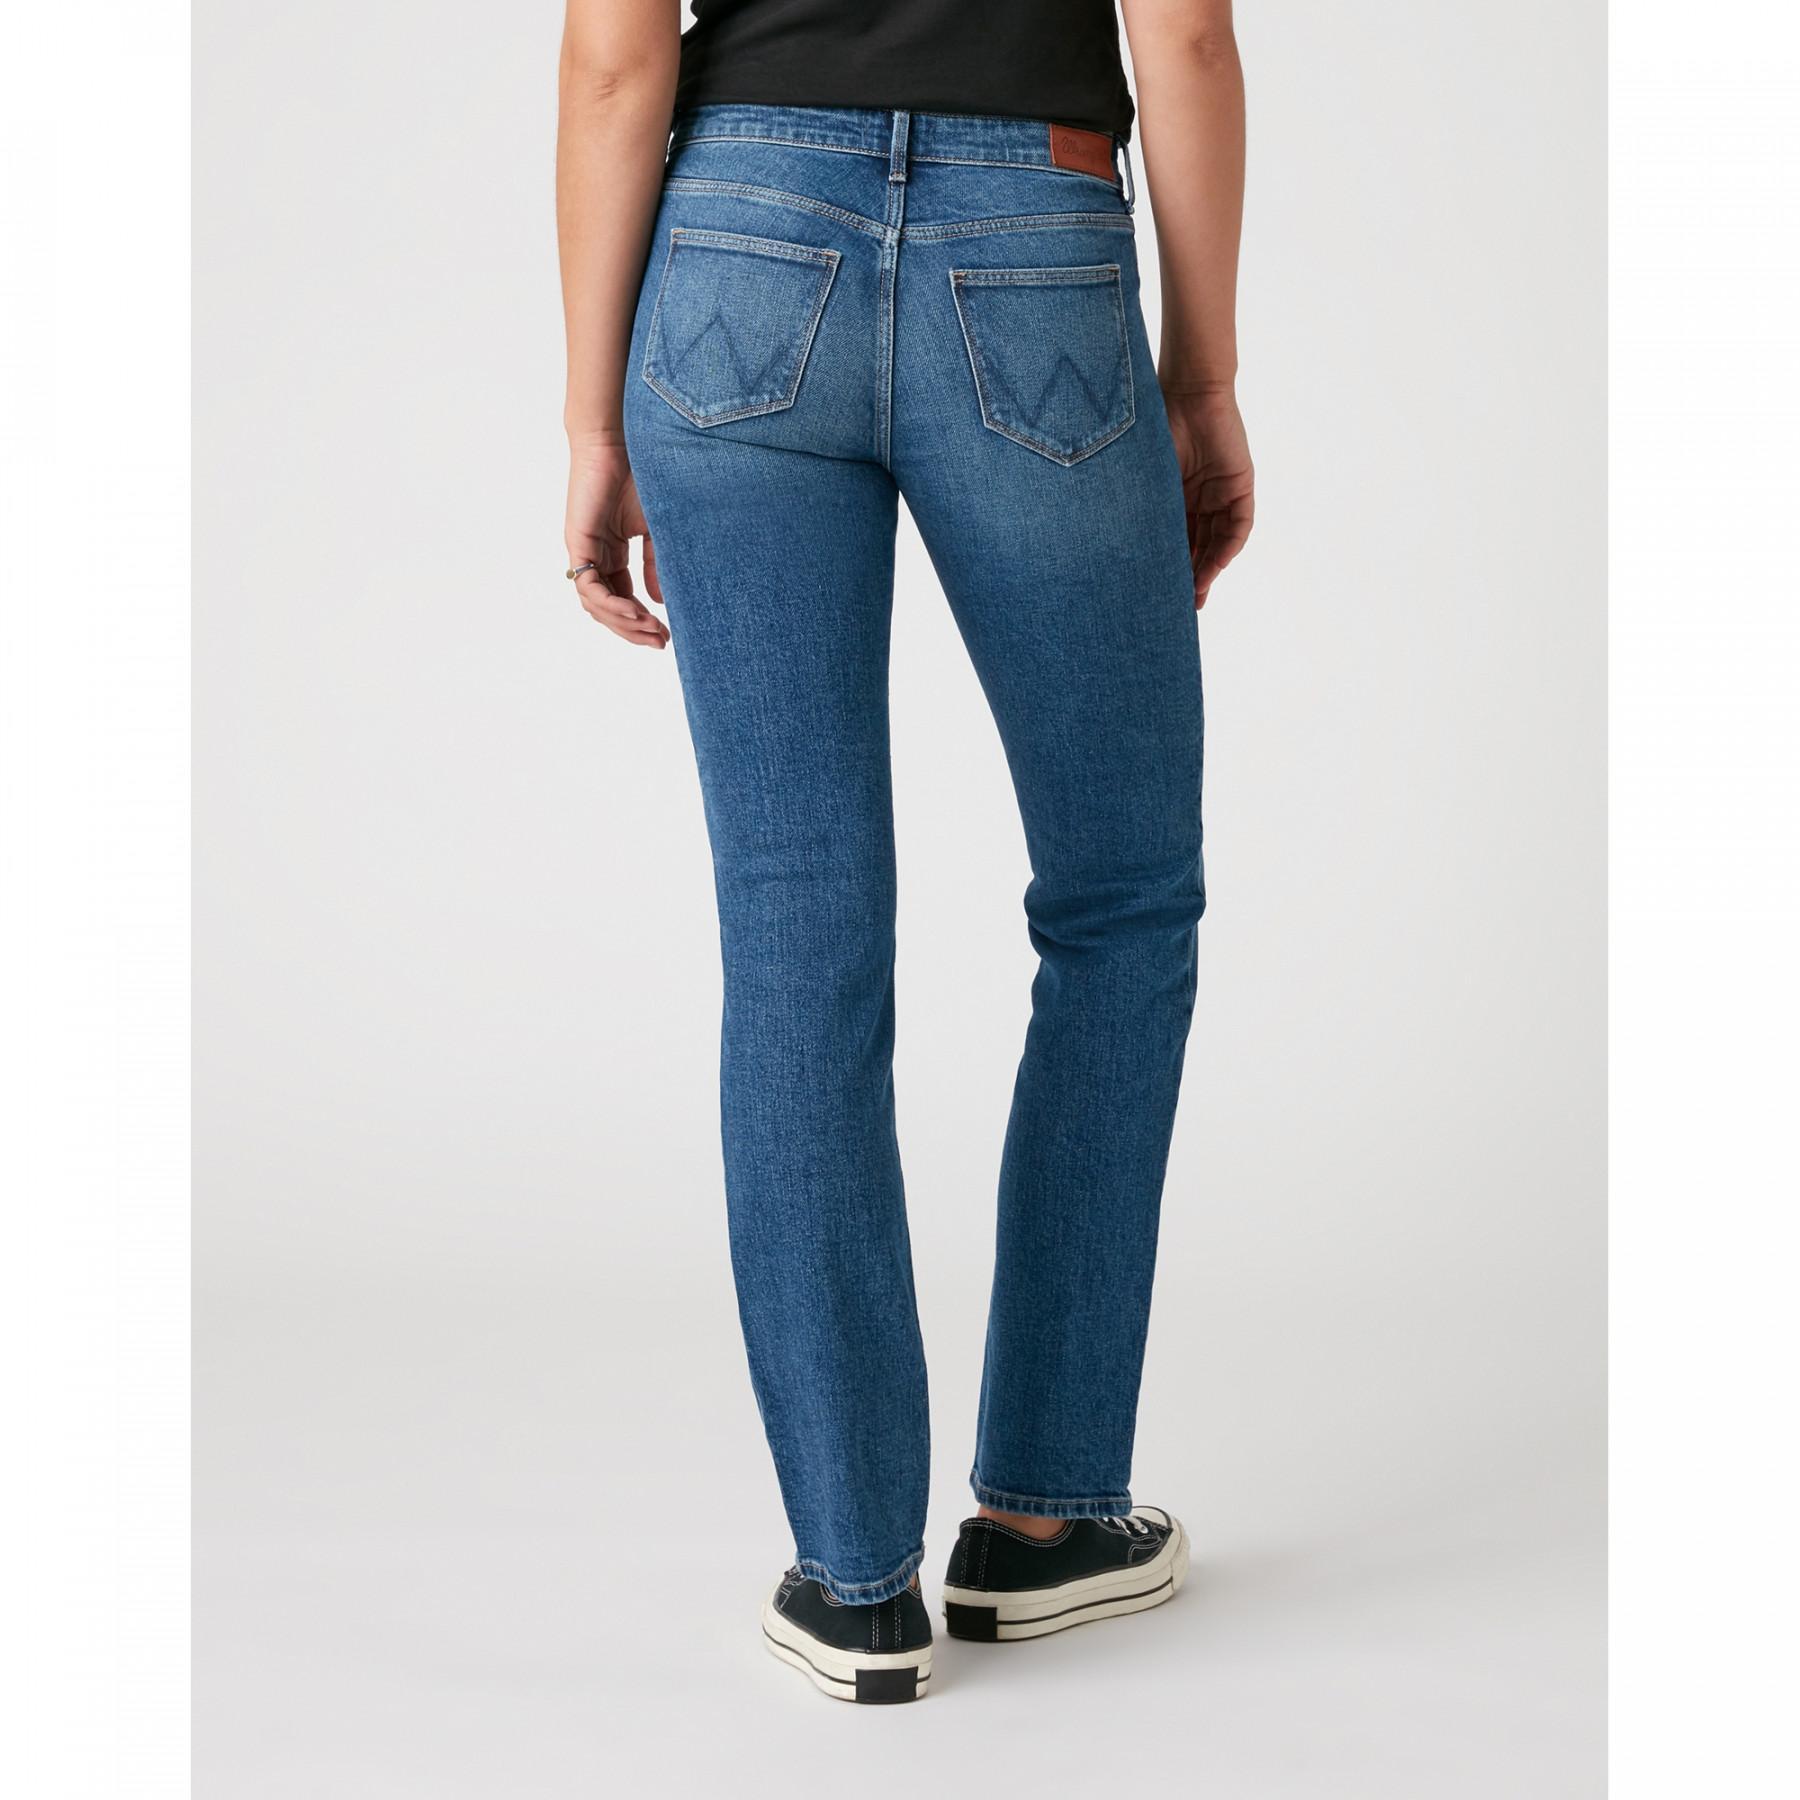 Women's jeans Wrangler Straight Air